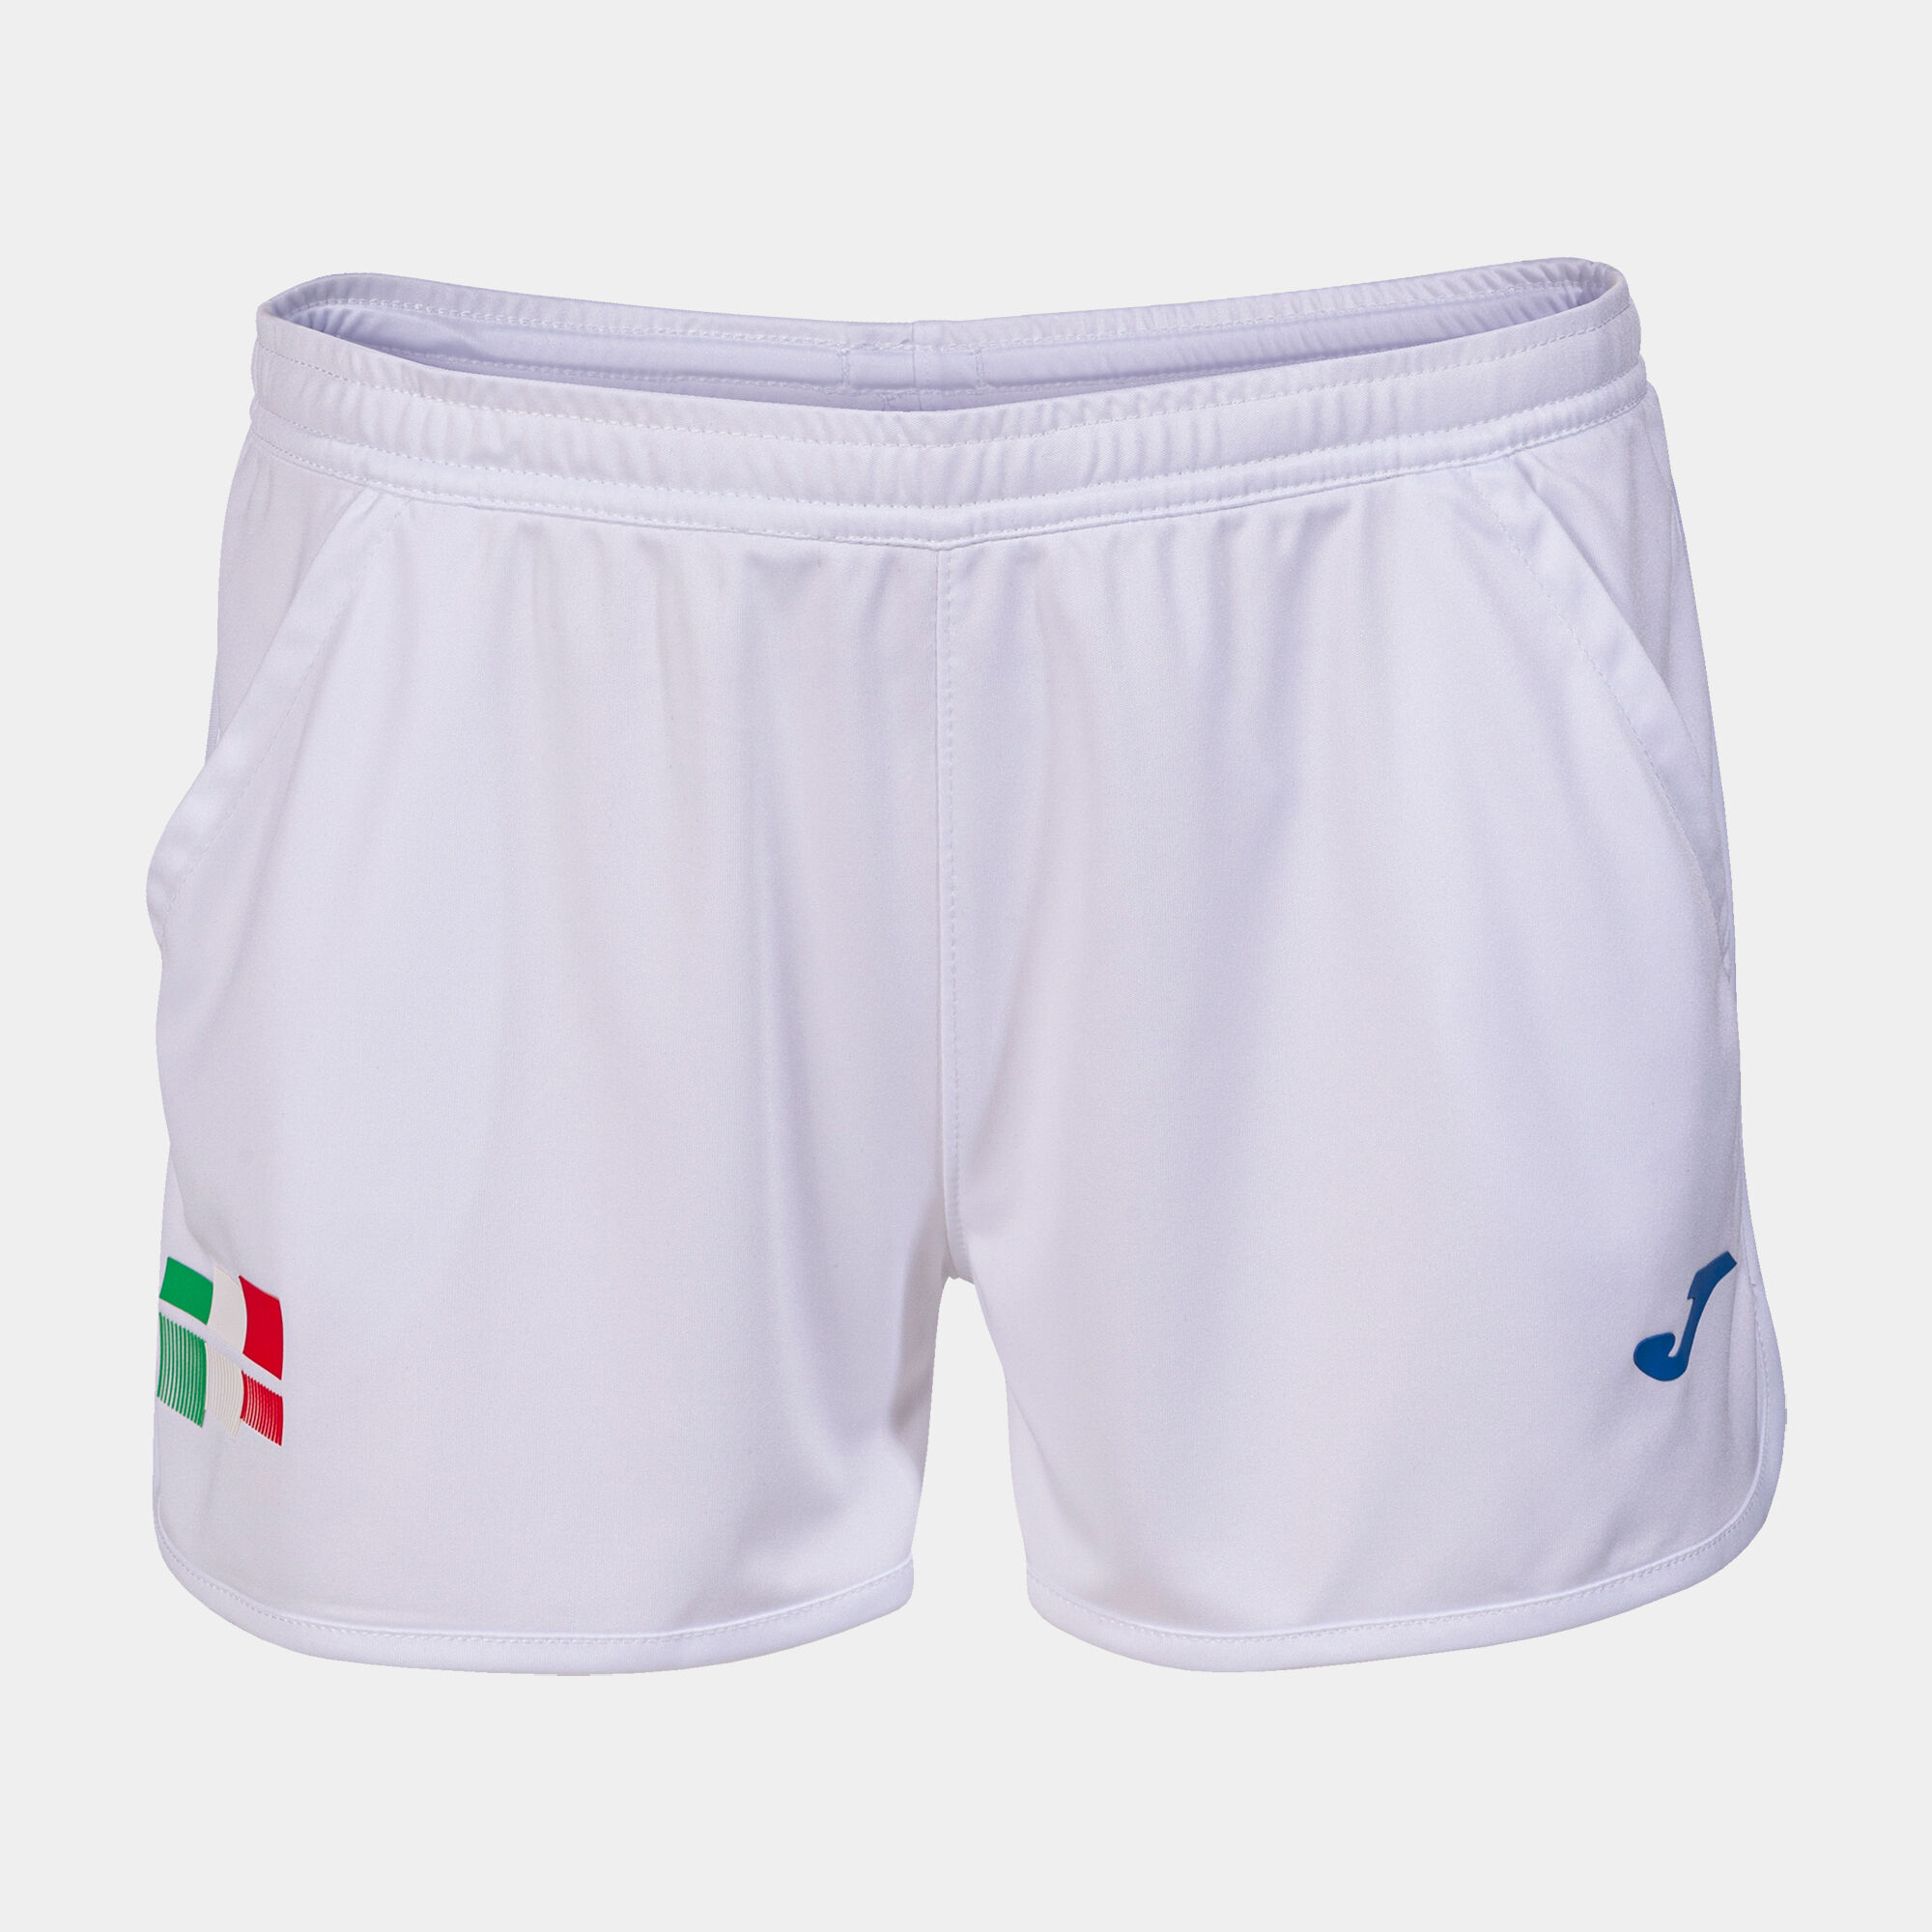 Pantaloncini Federazione Italiana Tennis donna